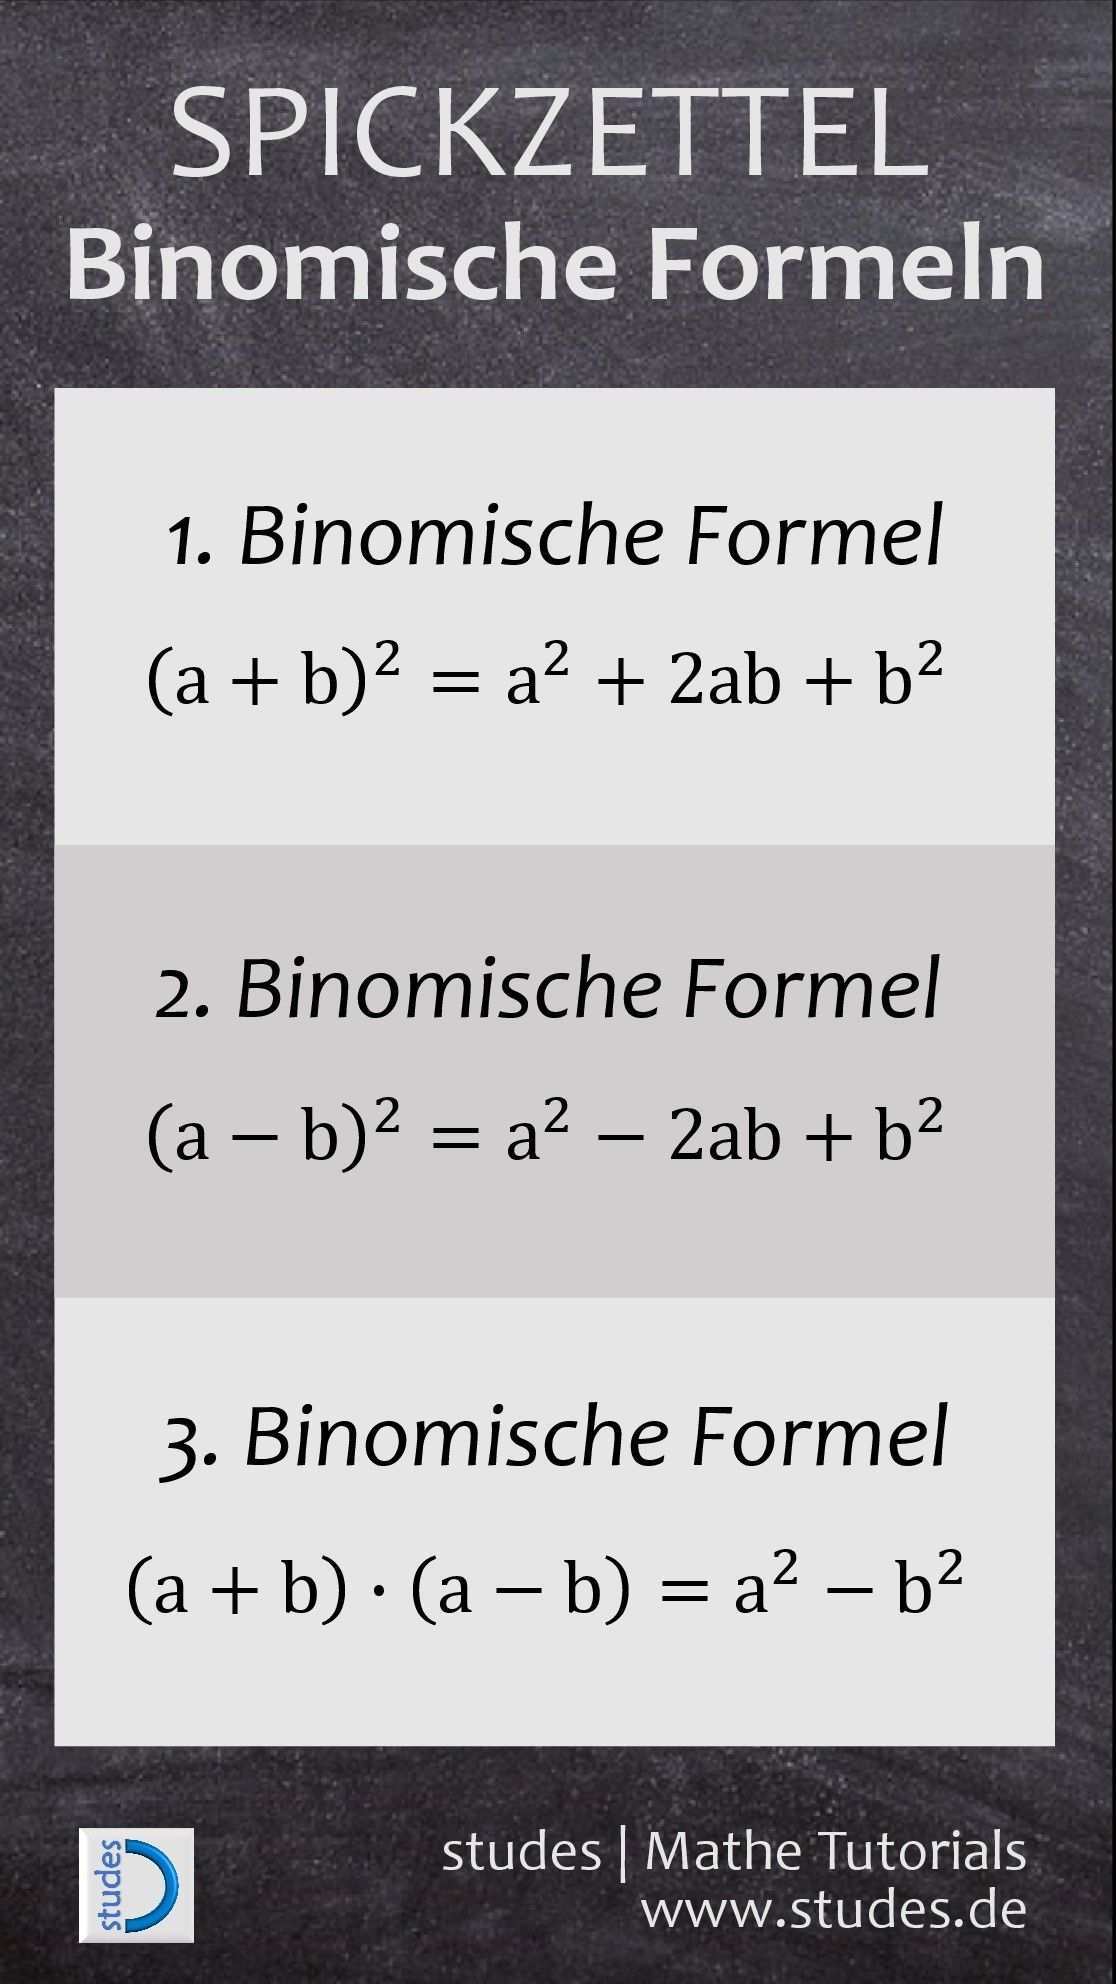 Binomische Formel Beispiel